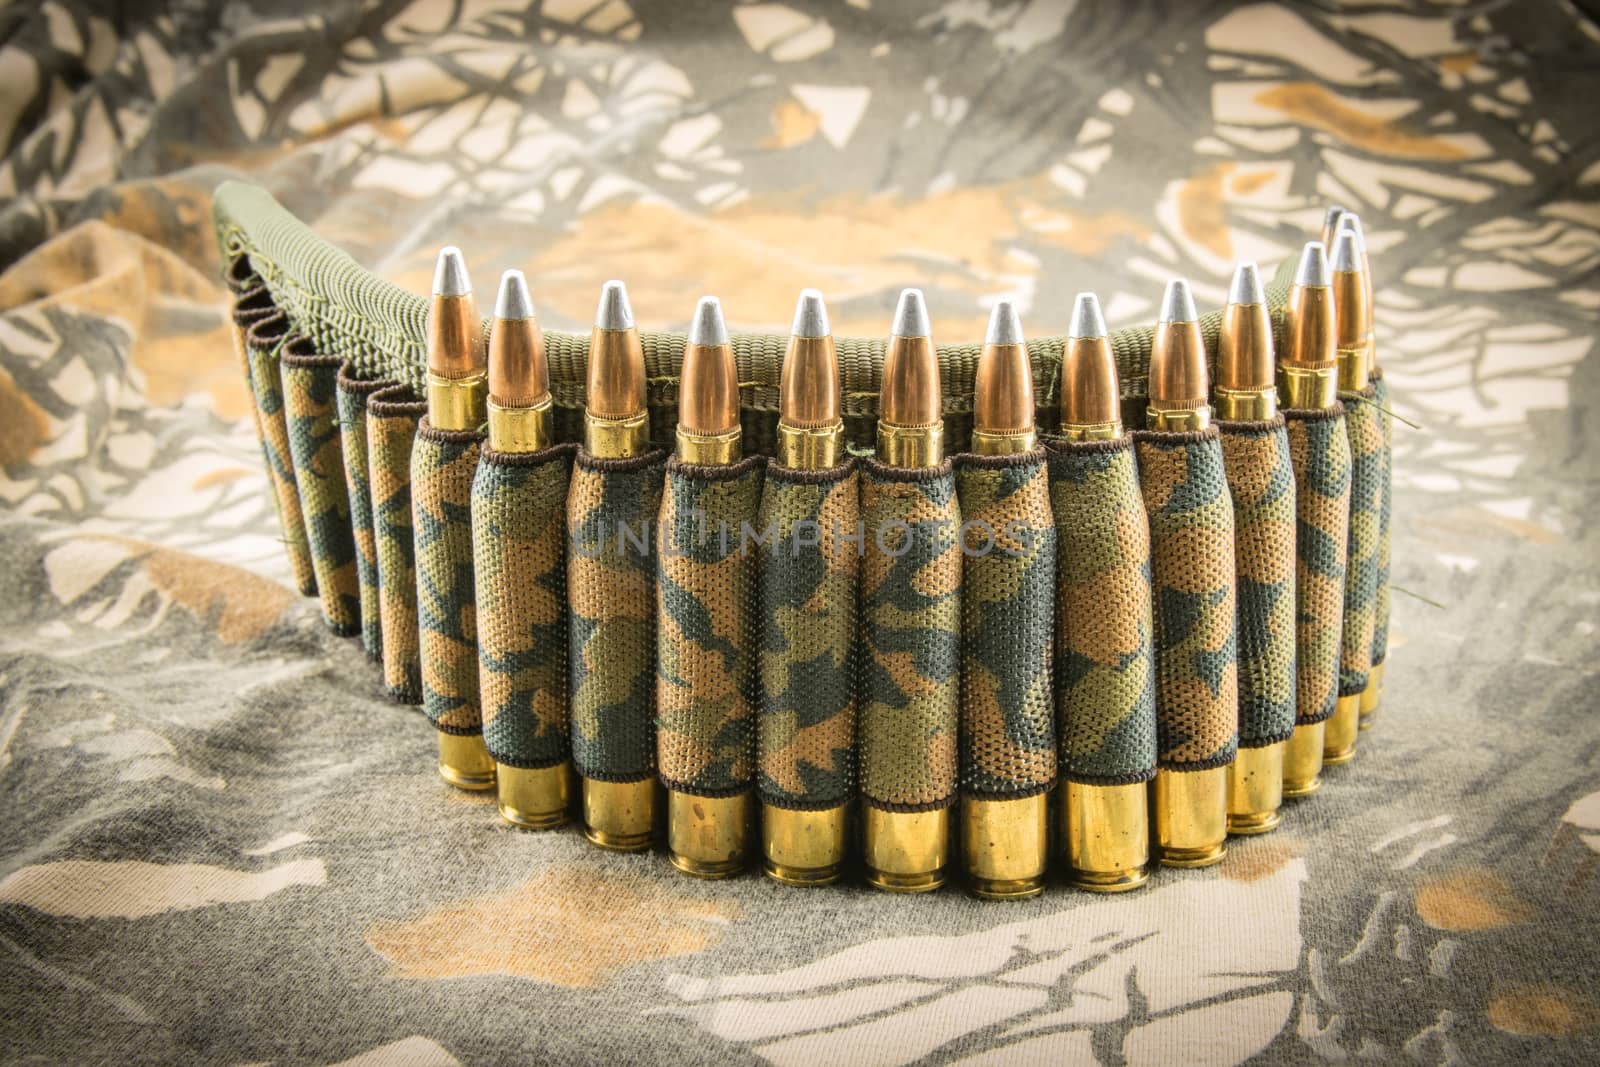 camouflage ammunition belt for rifle on camouflage background